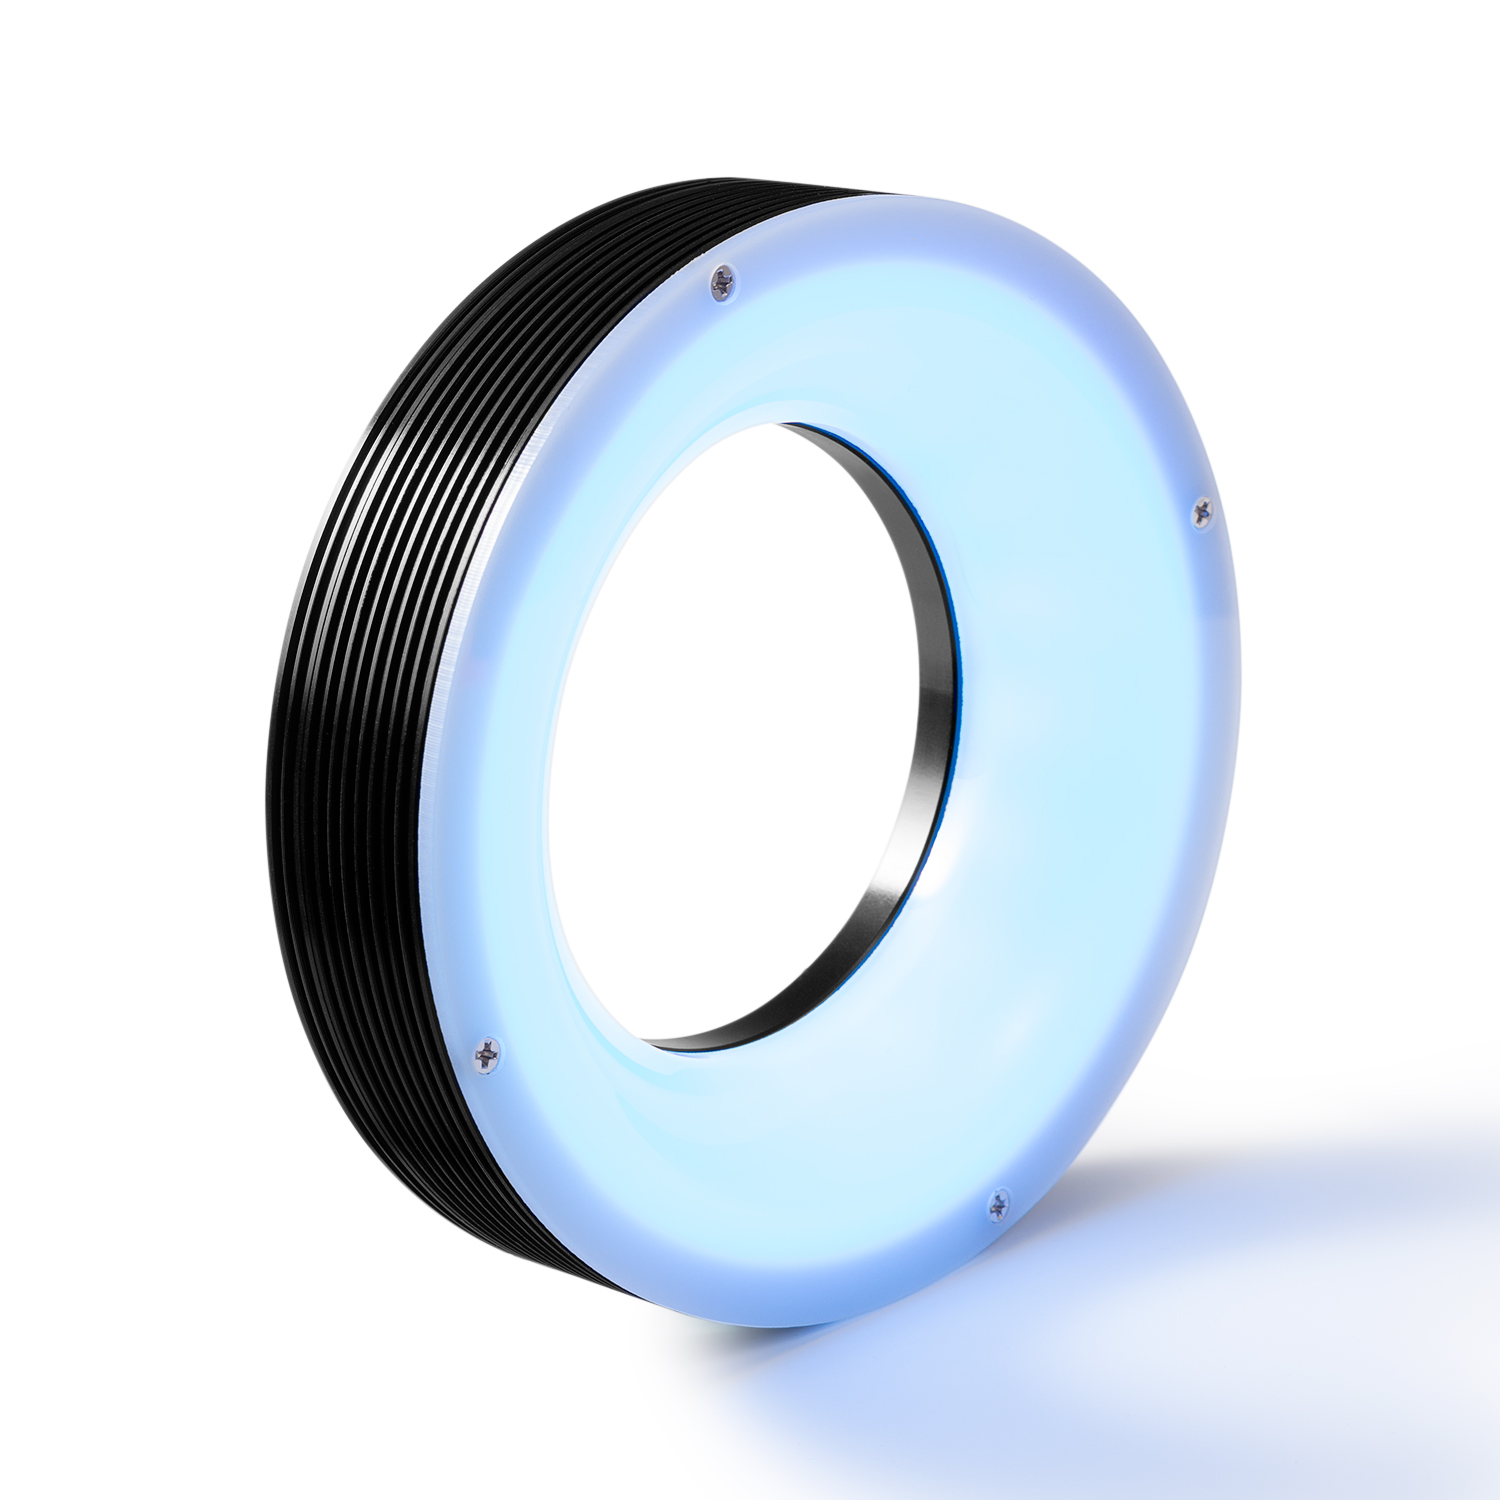 ระบบไฟส่องสว่าง แหวน ไร้เงา (ขาว/แดง/น้ำเงิน) สำหรับ อุปกรณ์สำหรับงานตรวจสอบชิ้นงาน ชิ้นส่วนอิเล็กทรอนิกส์ ฯลฯ (CST-HRS116-W)